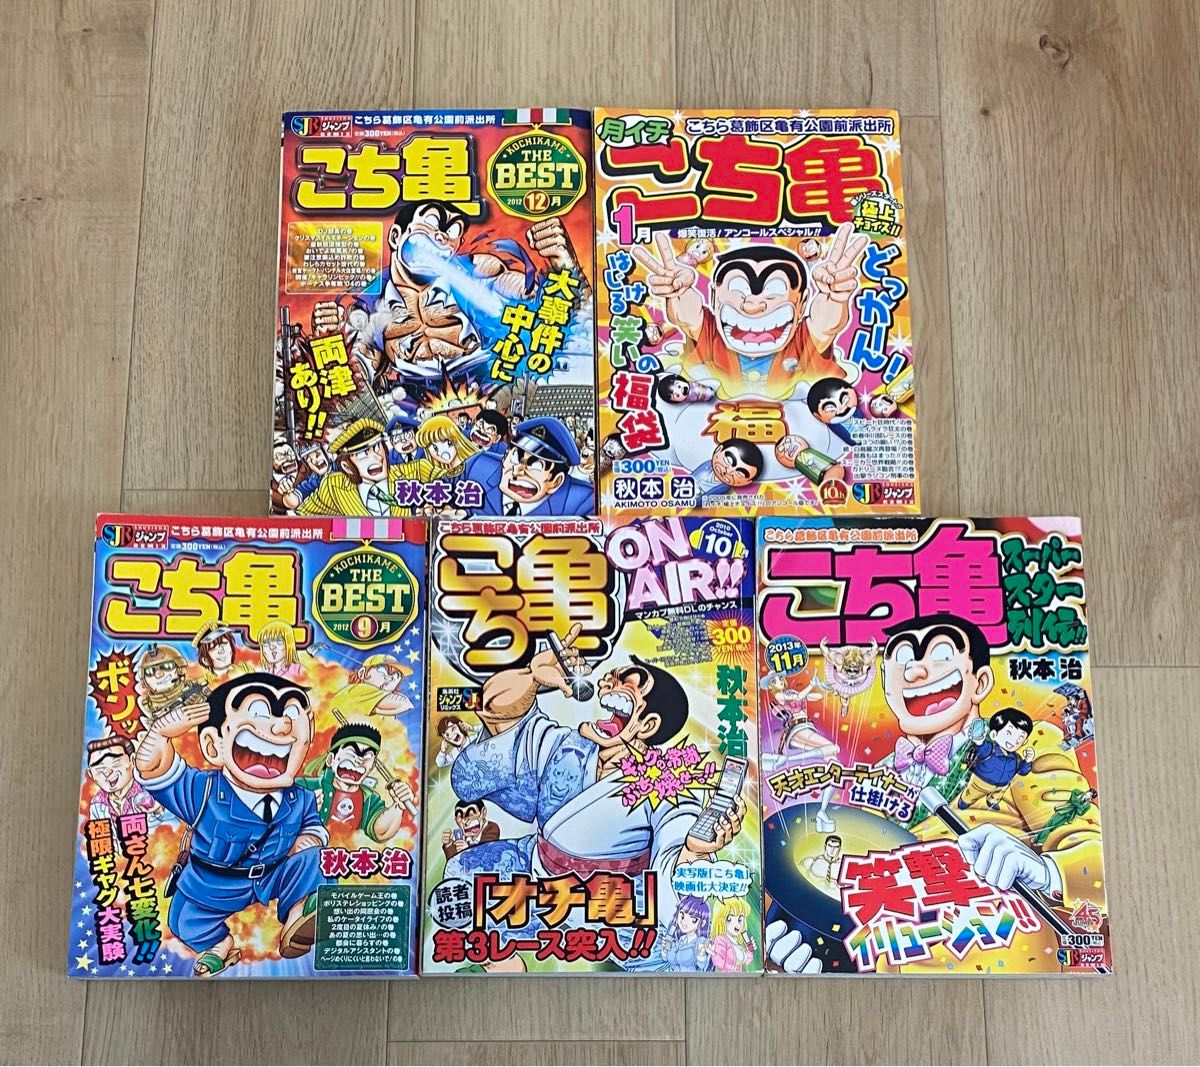 こち亀 コンビニコミック 5冊セット